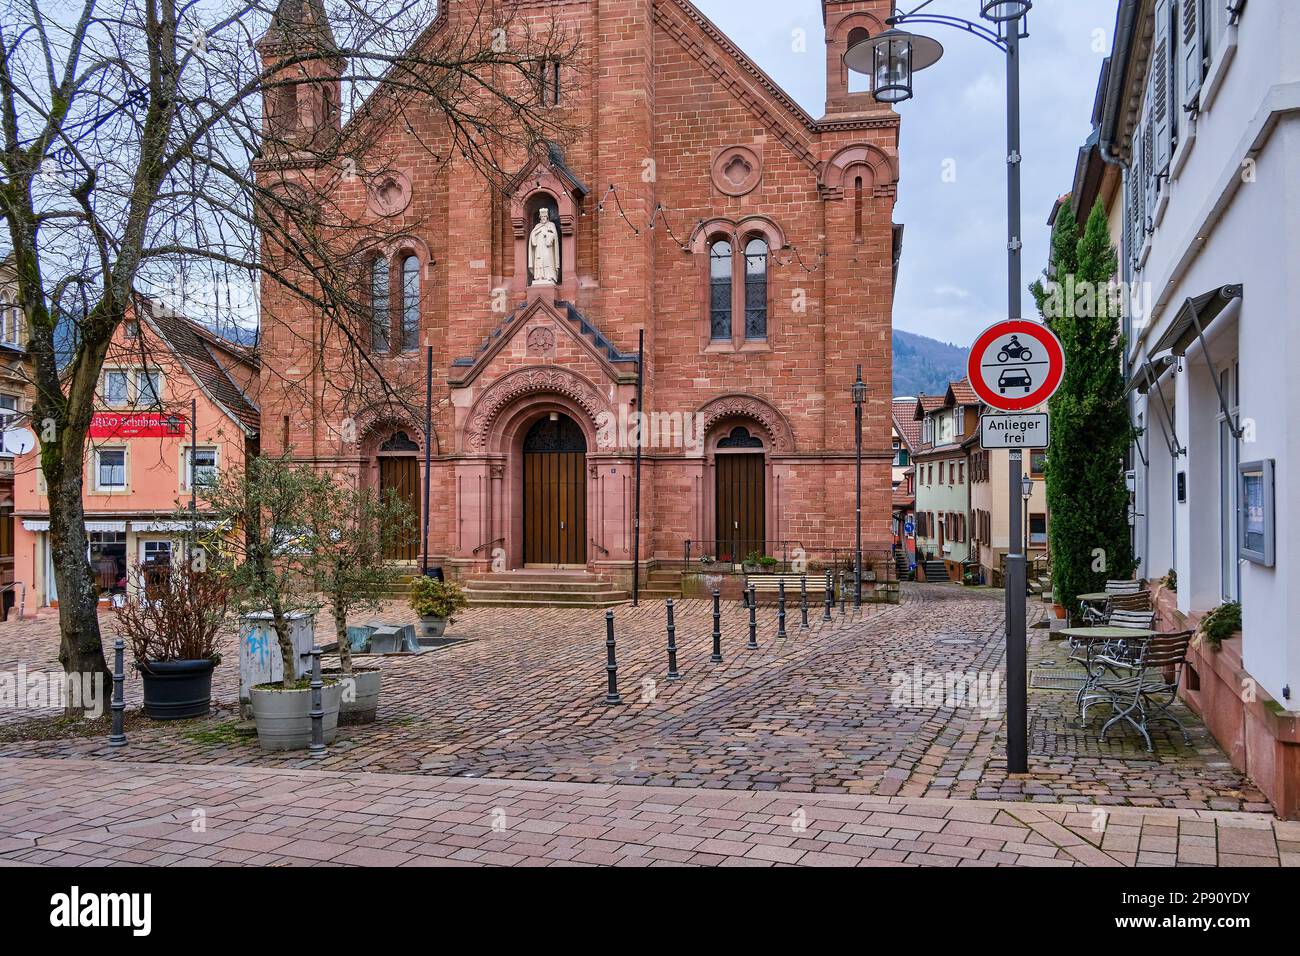 Die neoromaneske katholische Pfarrkirche St. John Nepomuk in der Stadt Neckargemünd, Baden-Württemberg, Deutschland, Europa. Stockfoto